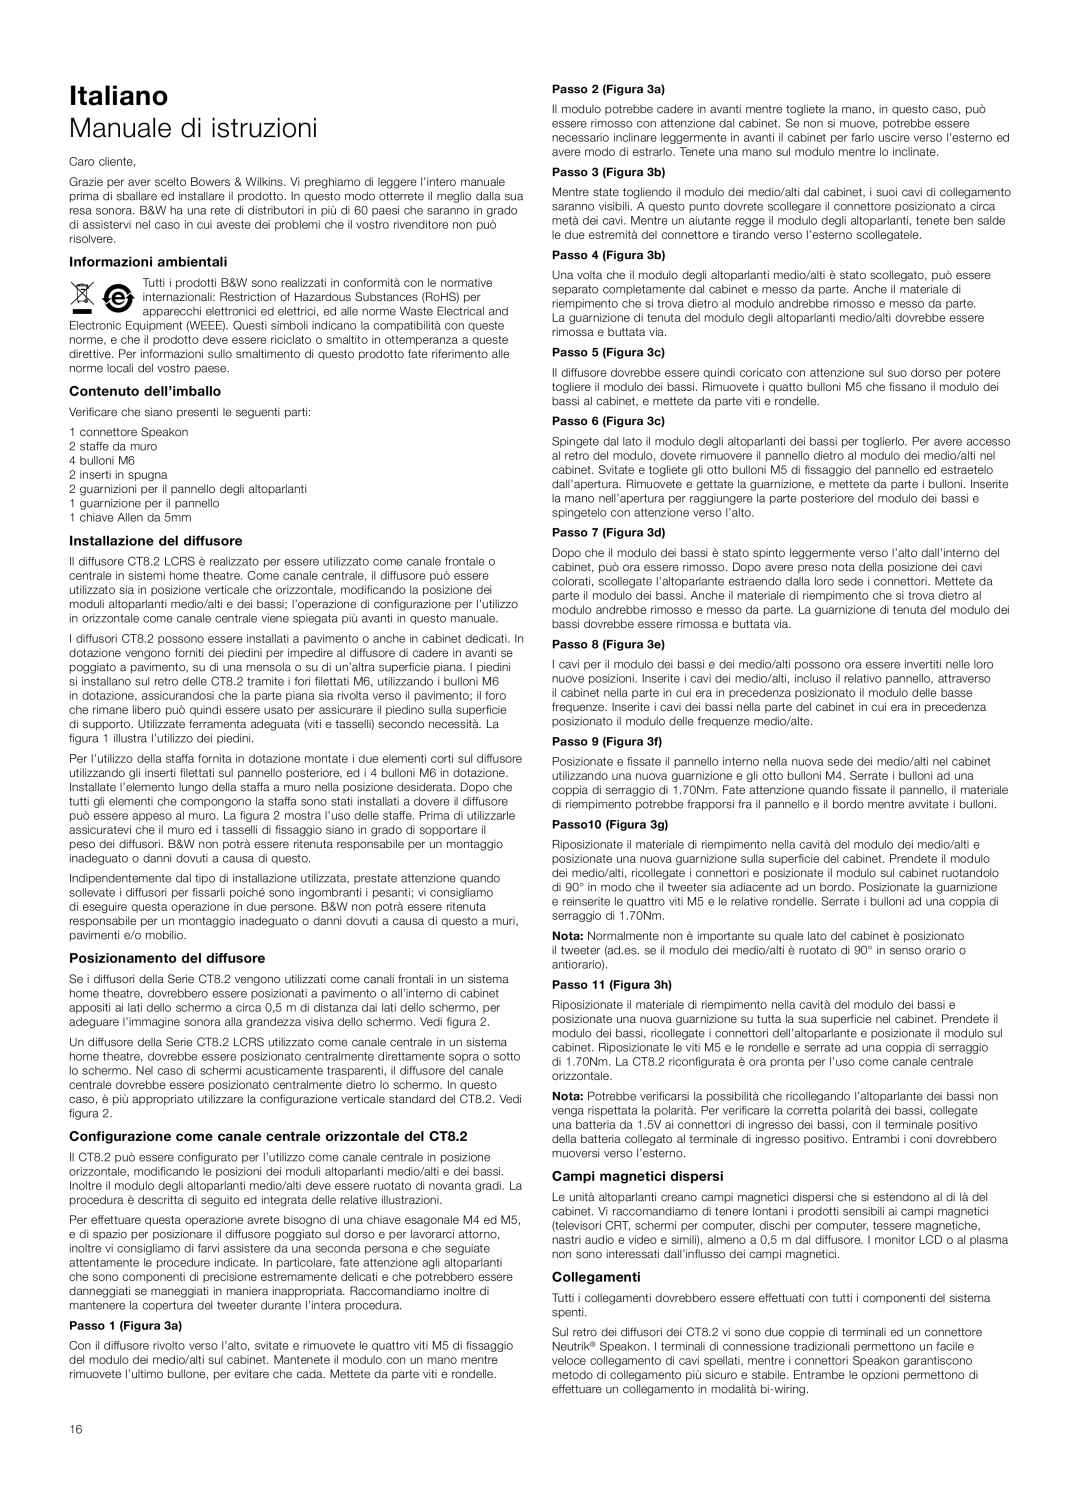 Bowers & Wilkins CT8.2 LCR Italiano, Manuale di istruzioni, Informazioni ambientali, Contenuto dell’imballo, Collegamenti 